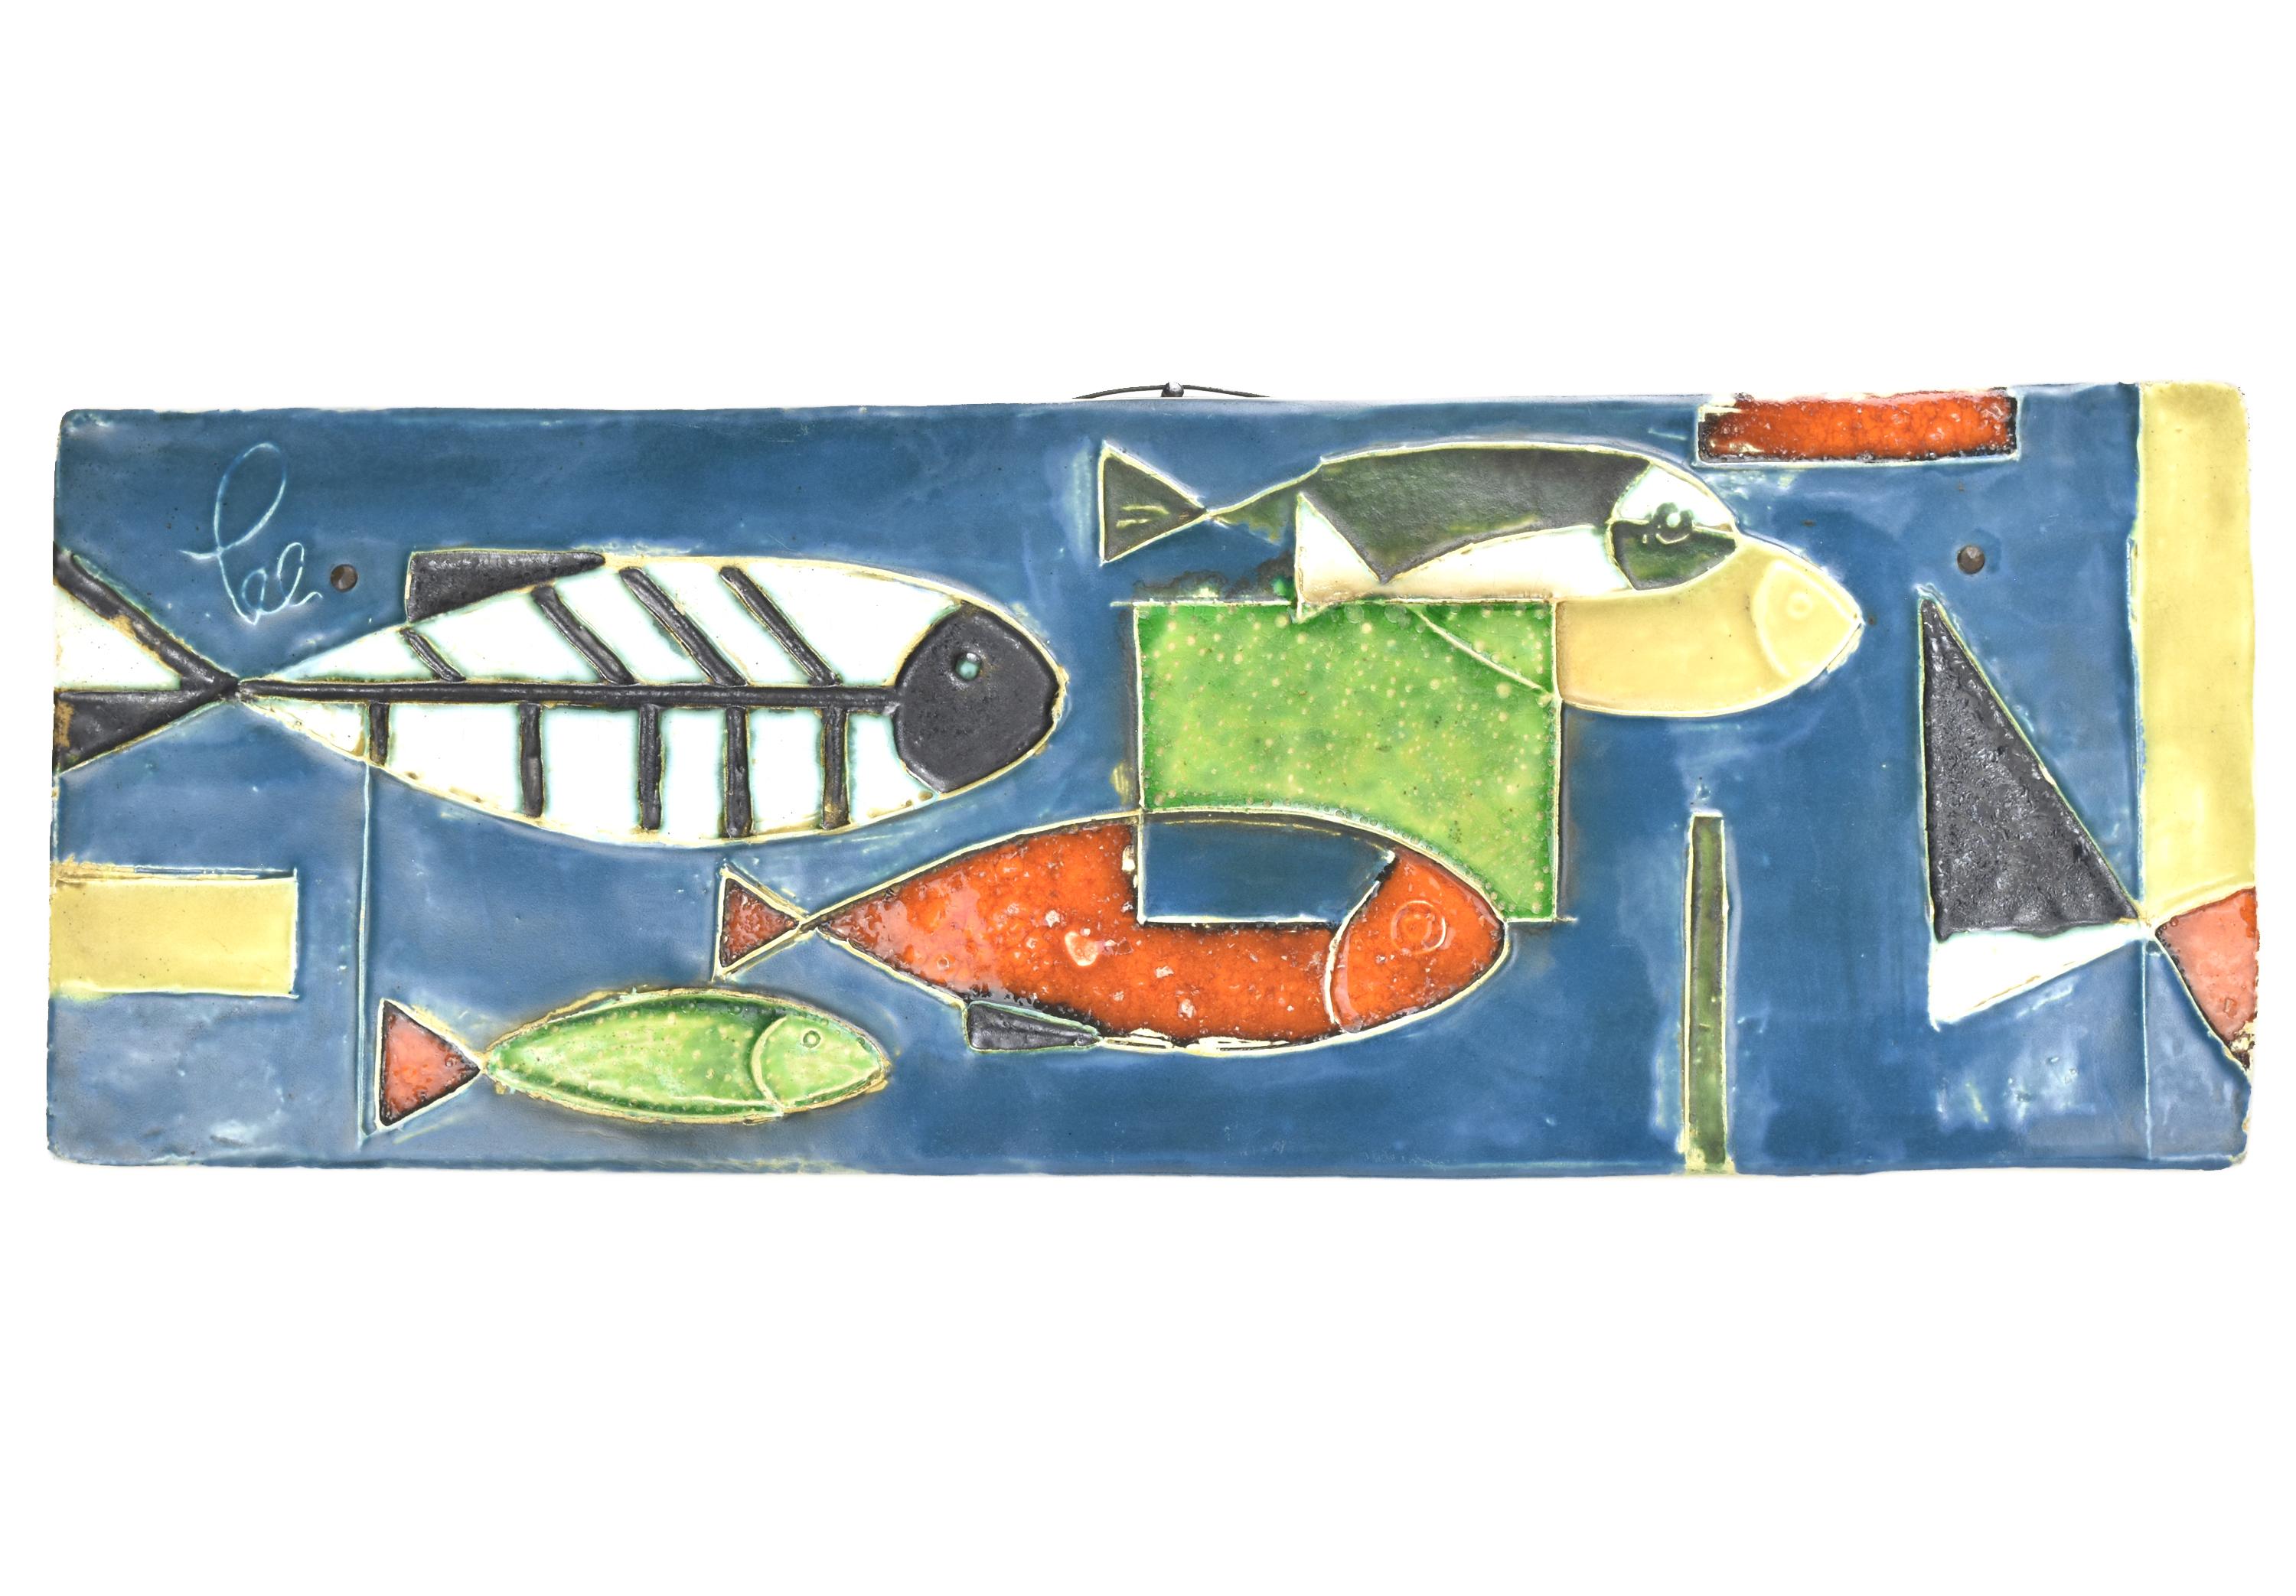 Plaque murale en poterie émaillée polychrome décorée de plusieurs poissons, créée par Helmut Schaffenacker d'Ulm dans les années 1950. Helmut Schaffenacker était un céramiste allemand de renom connu pour ses pièces de poterie décoratives, et cette